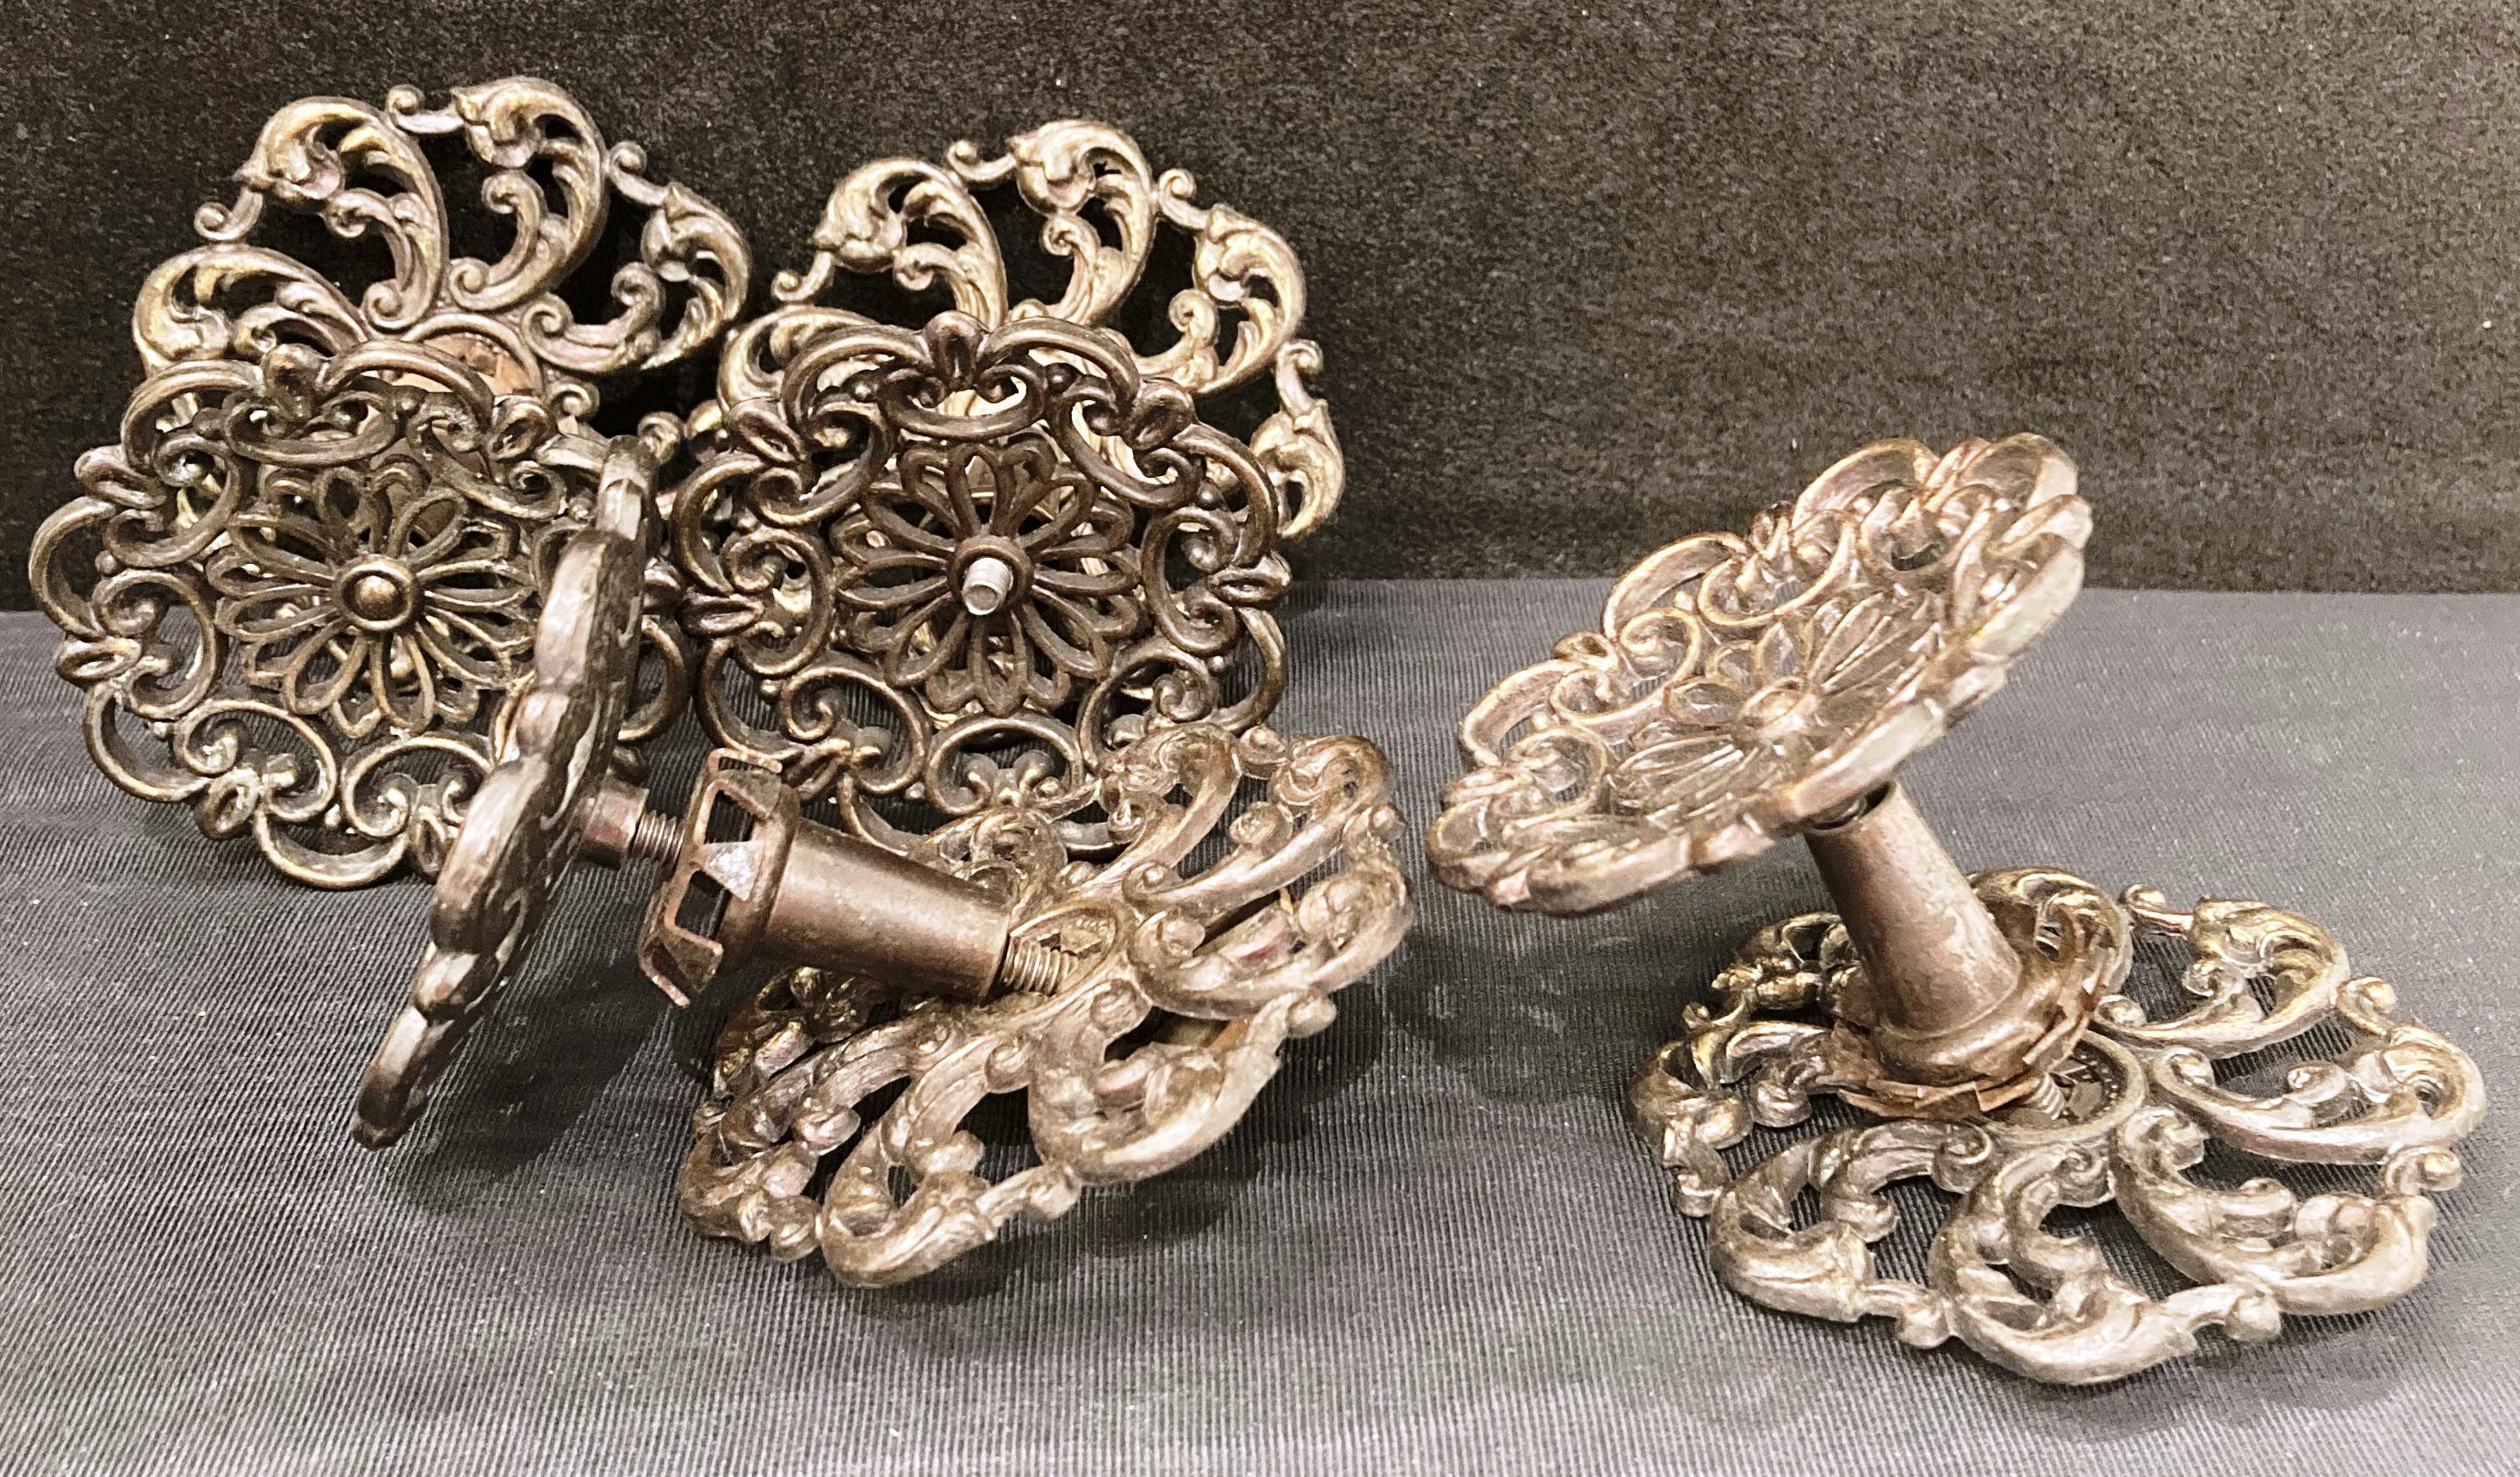 Set of four vintage metal floral design drawer handles with back plates (saleroom location: S3 GC3) - Image 2 of 2